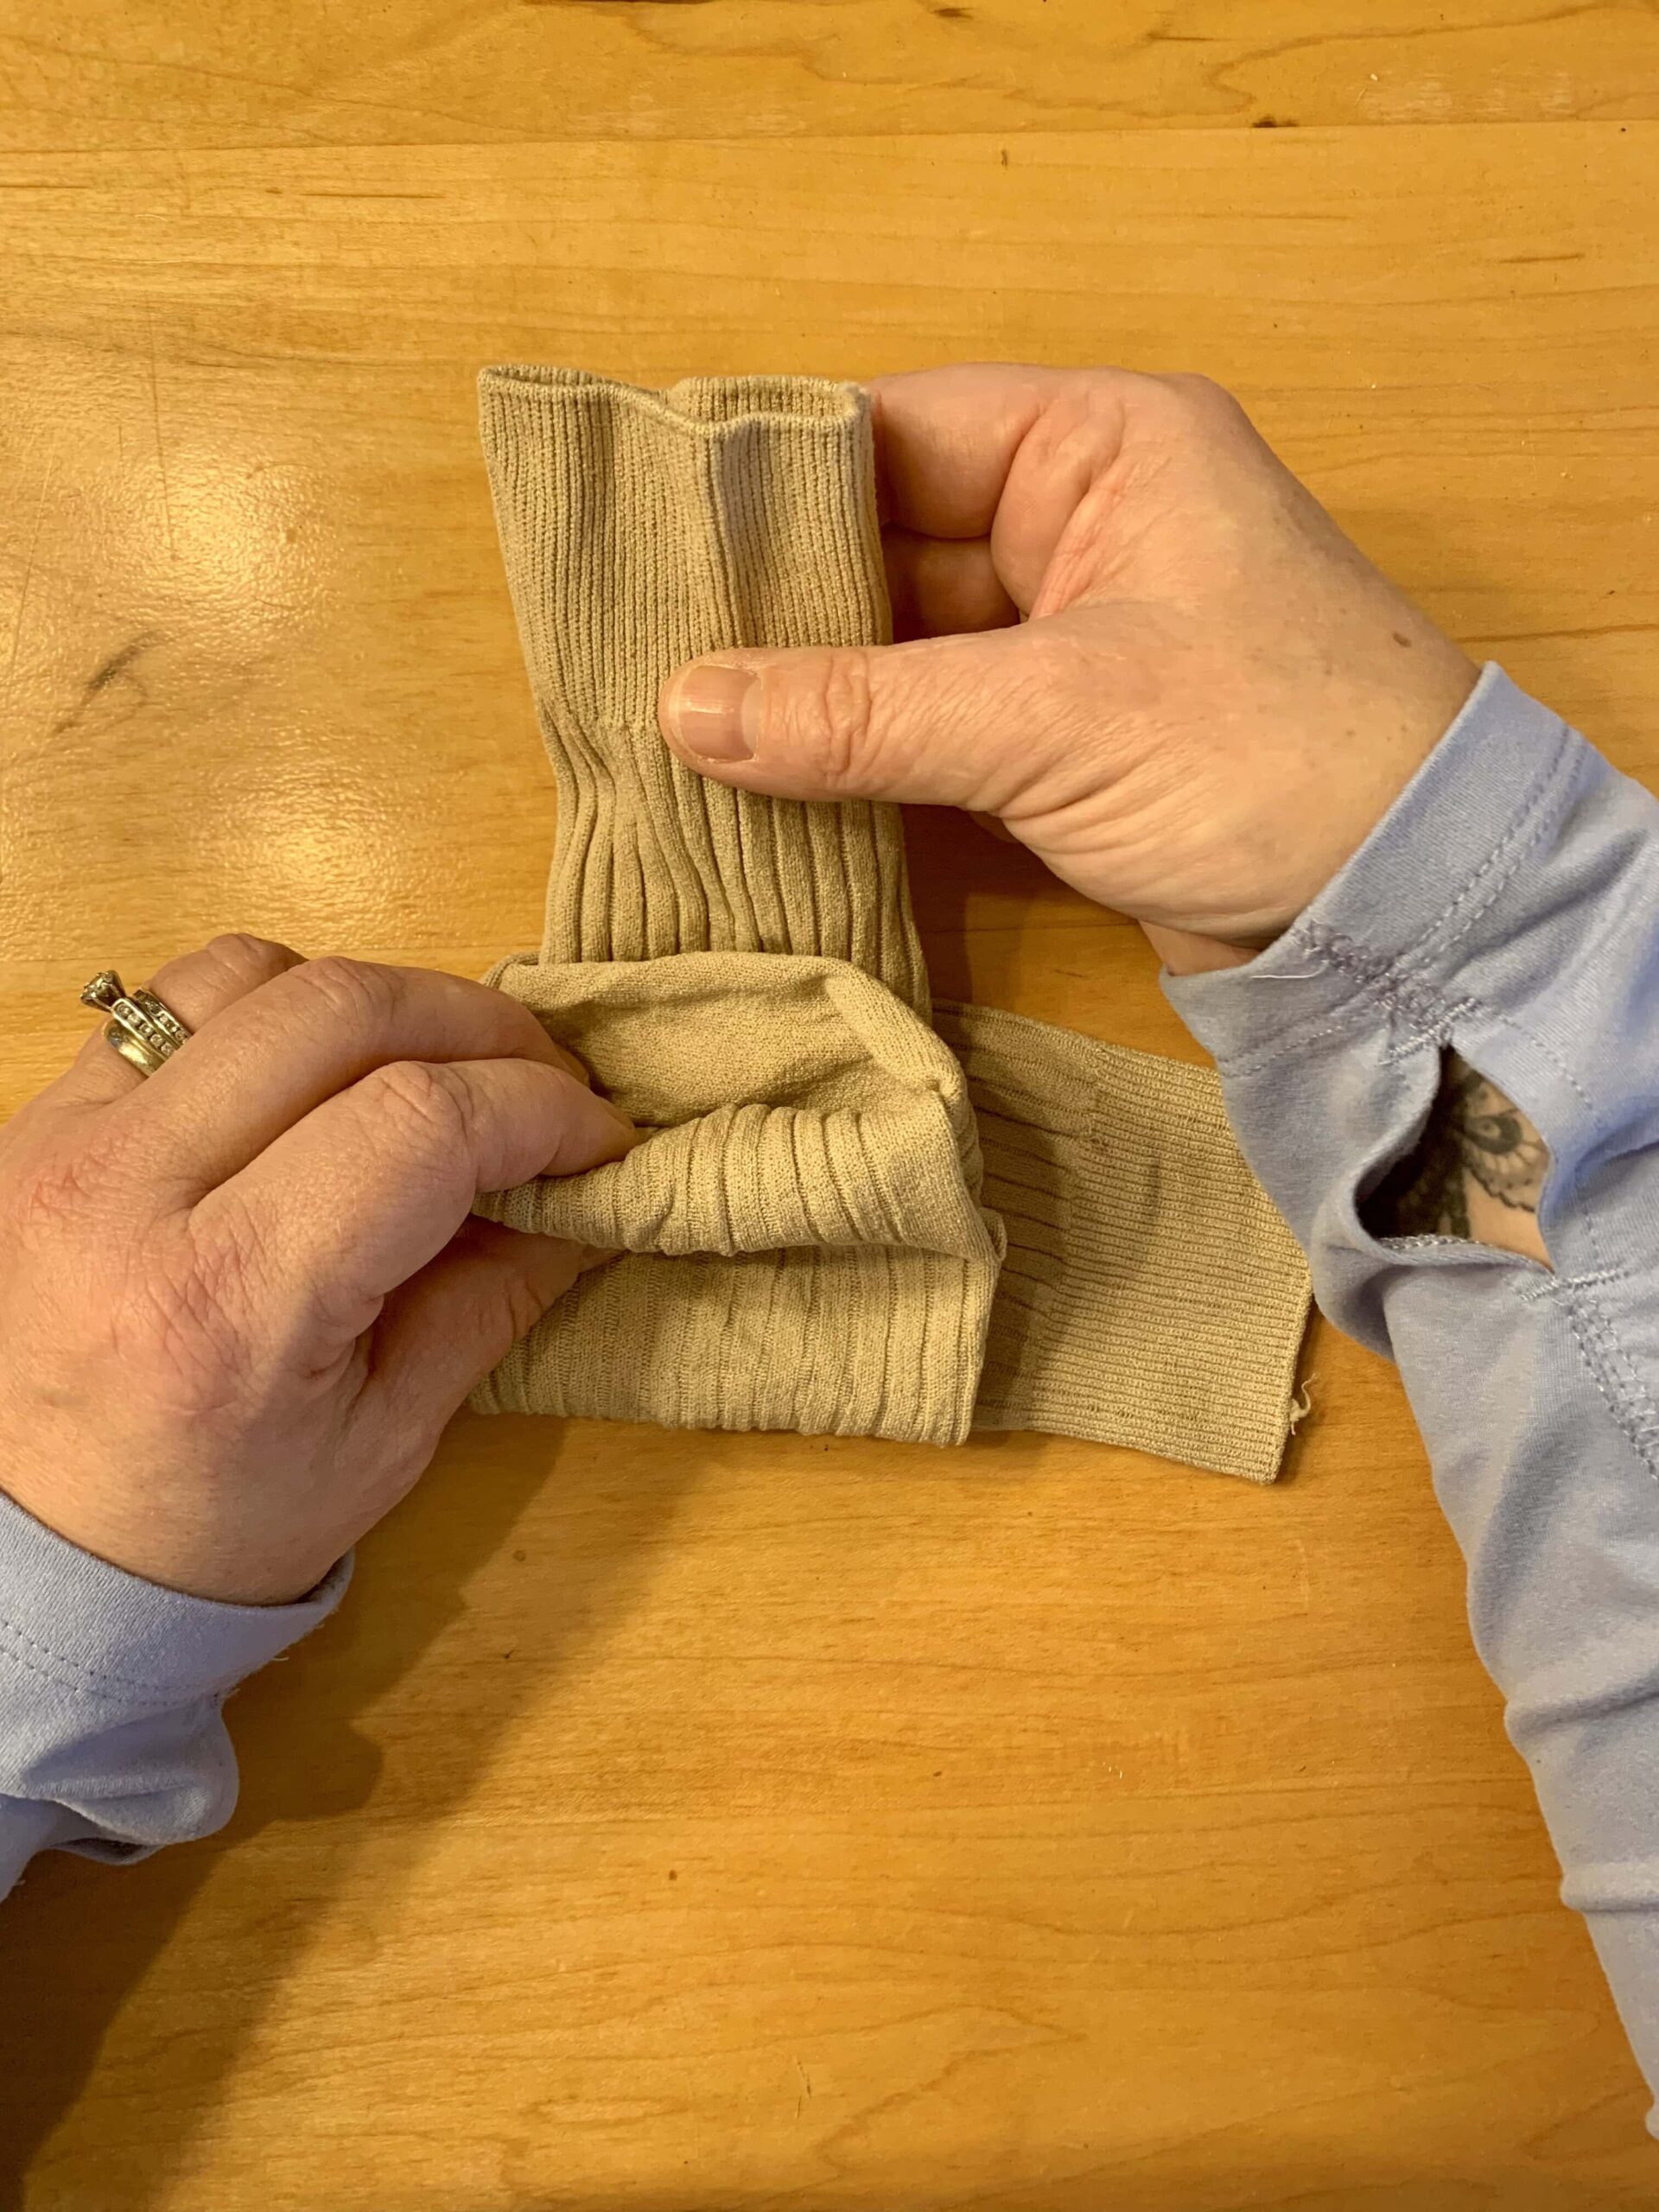 How to fold dress socks